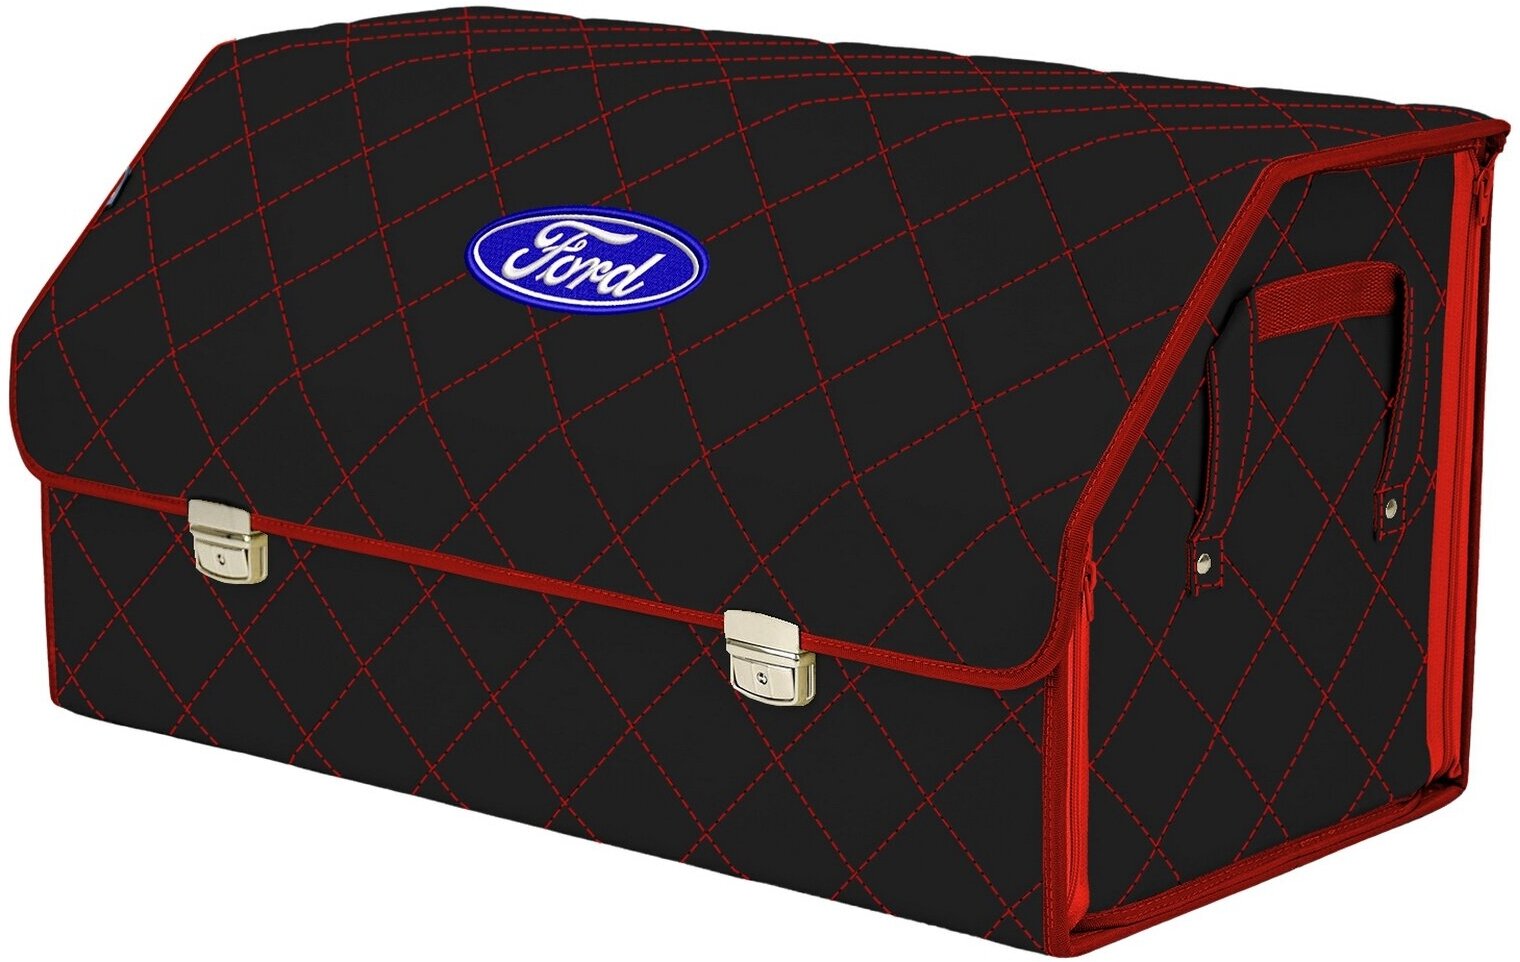 Органайзер-саквояж в багажник "Союз Премиум" (размер XL Plus). Цвет: черный с красной прострочкой Ромб и вышивкой Ford (Форд).